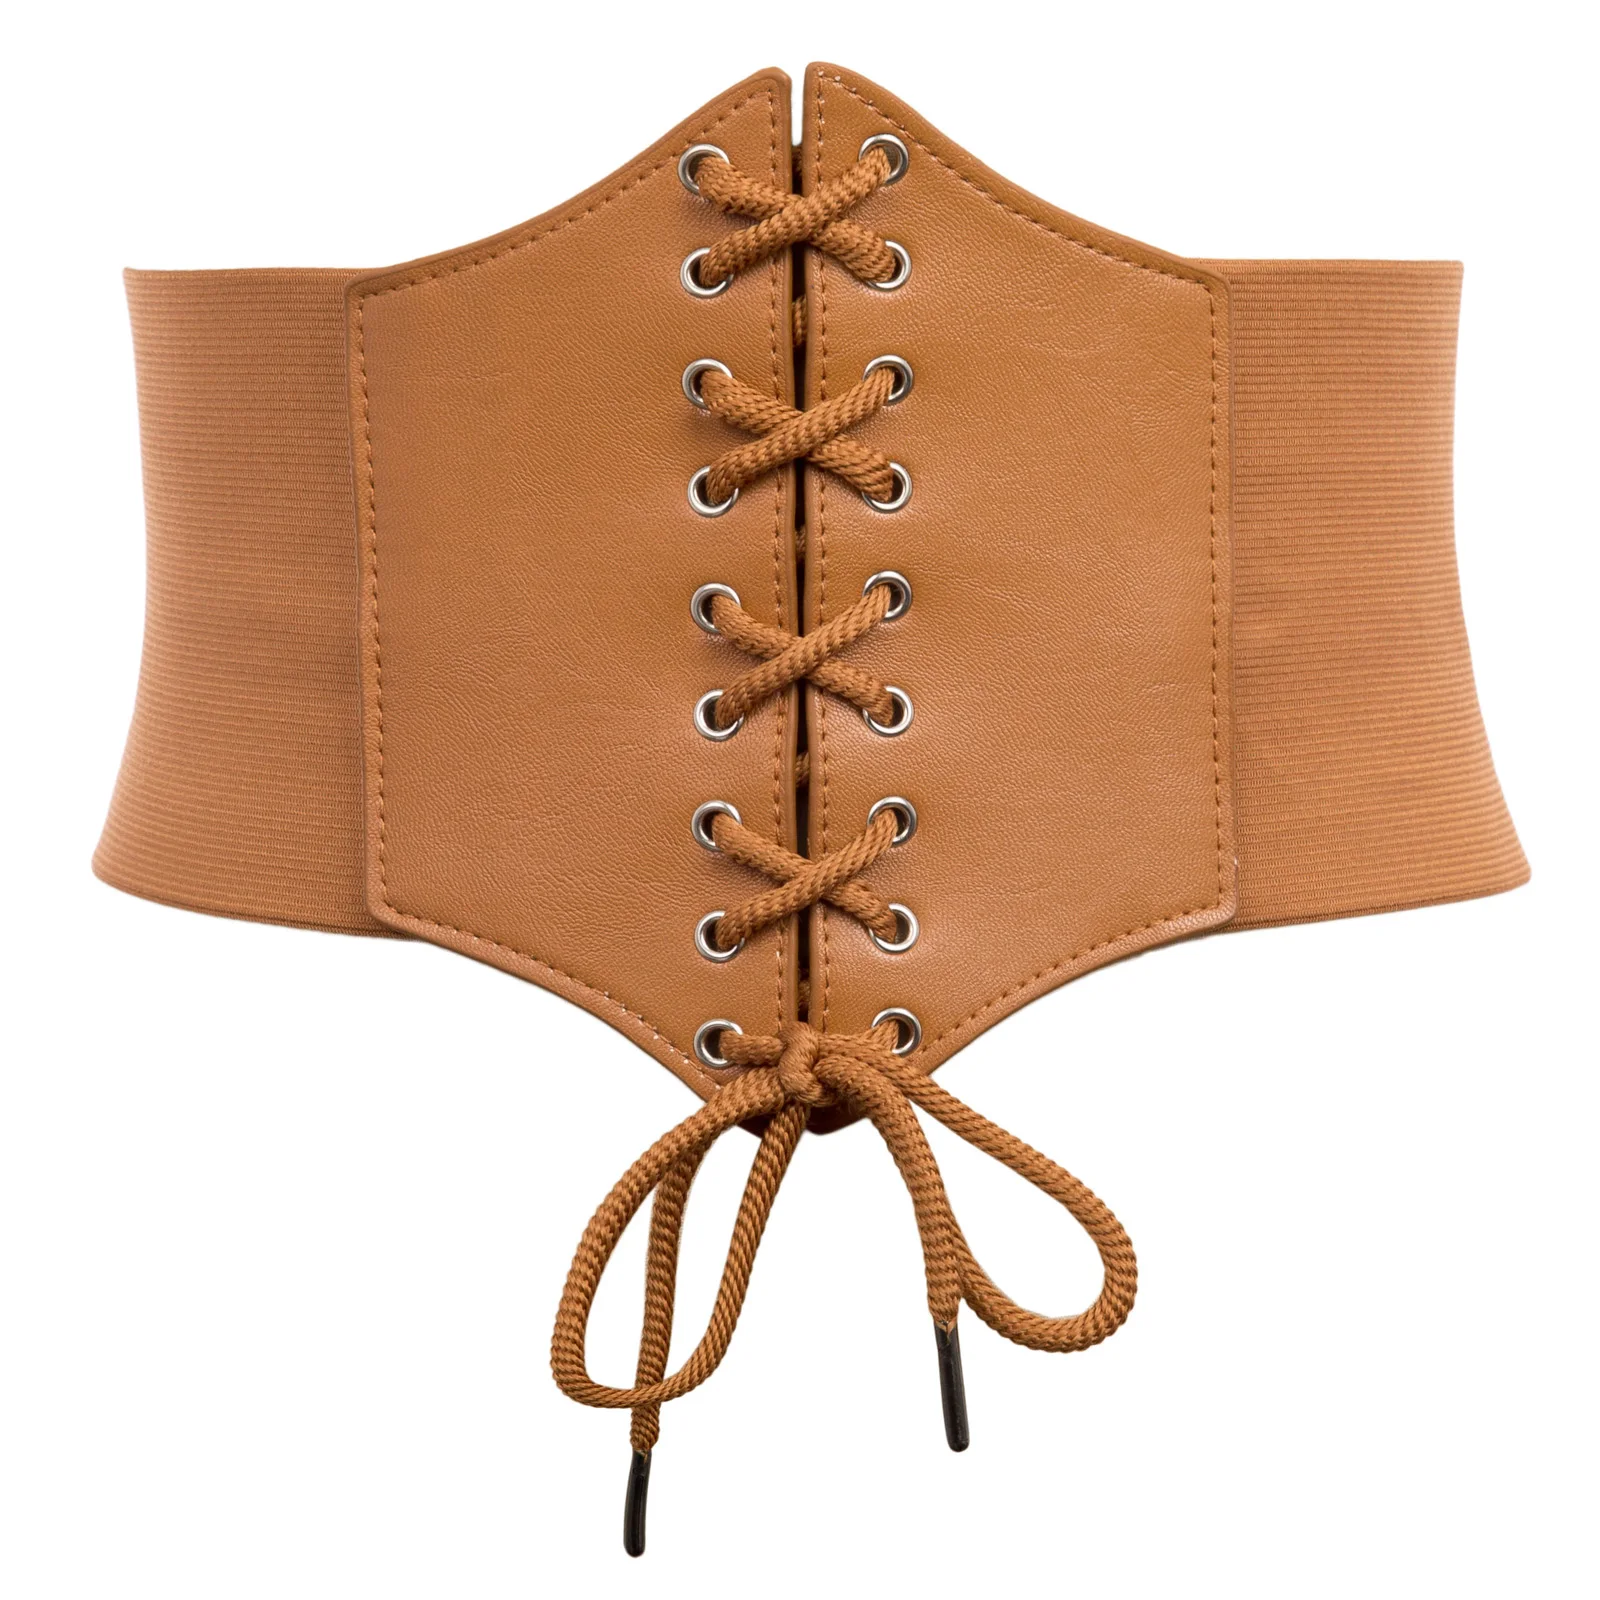 Плюс размер 3XL корсет пояс для женщин Мода шнуровка PU кожаный роскошный пояс Cinch корсет со стяжками широкий пояс с пряжкой пояс - Цвет: Brown